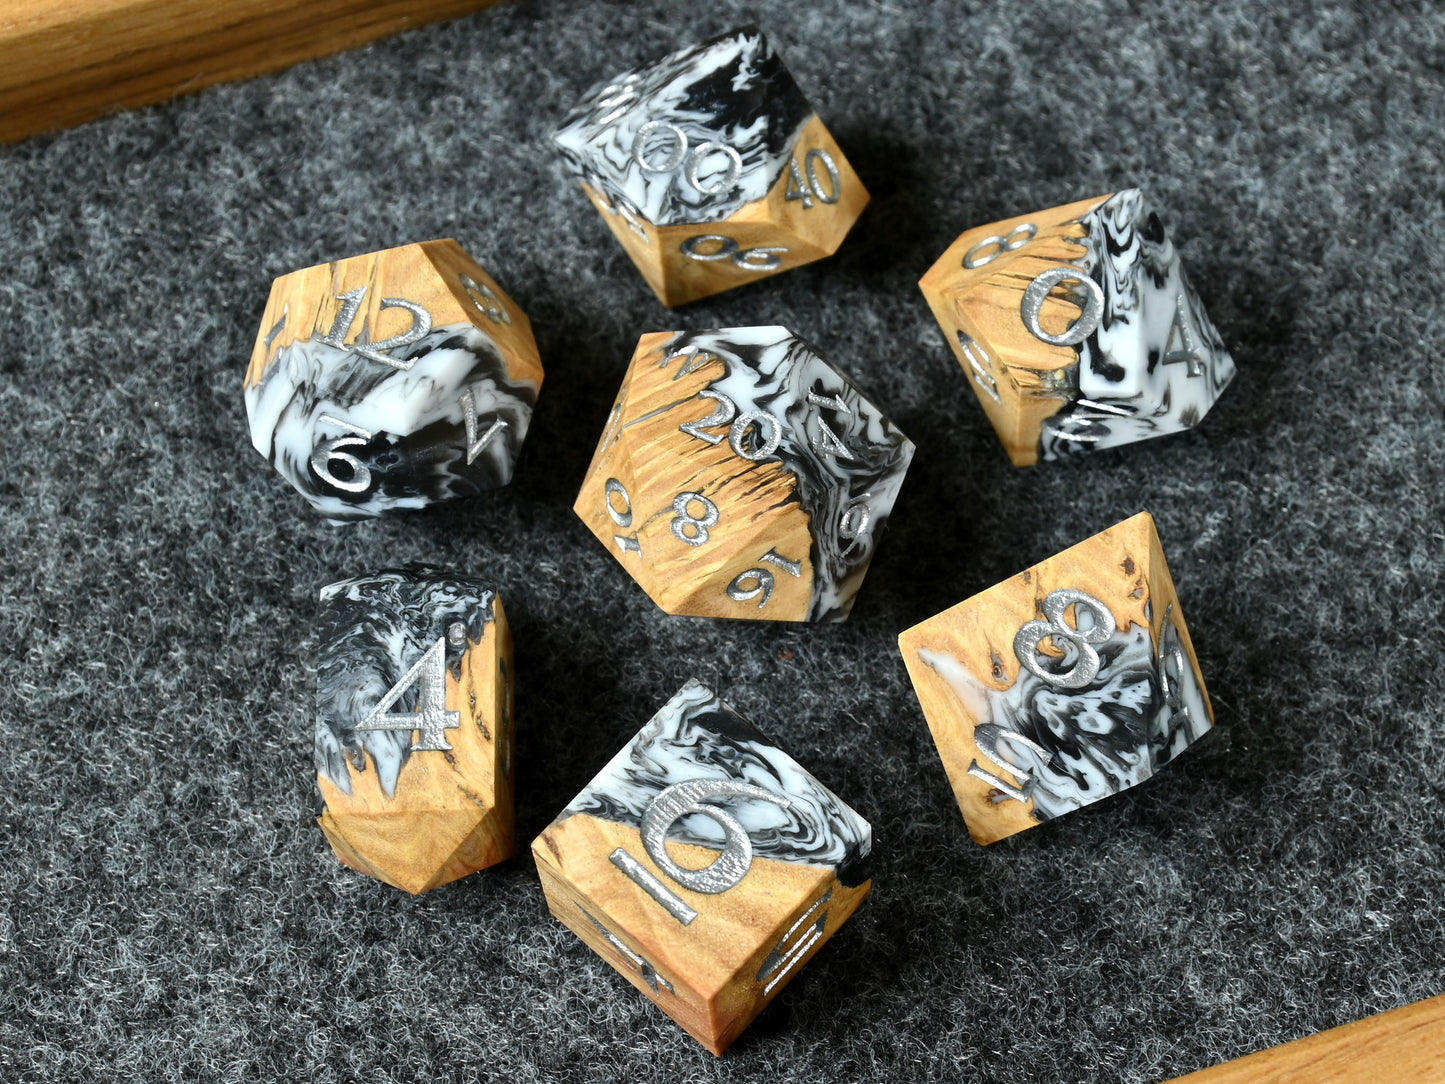 Shadowstuff Coolibah wood and resin hybrid dice set for D&D ttrpg.